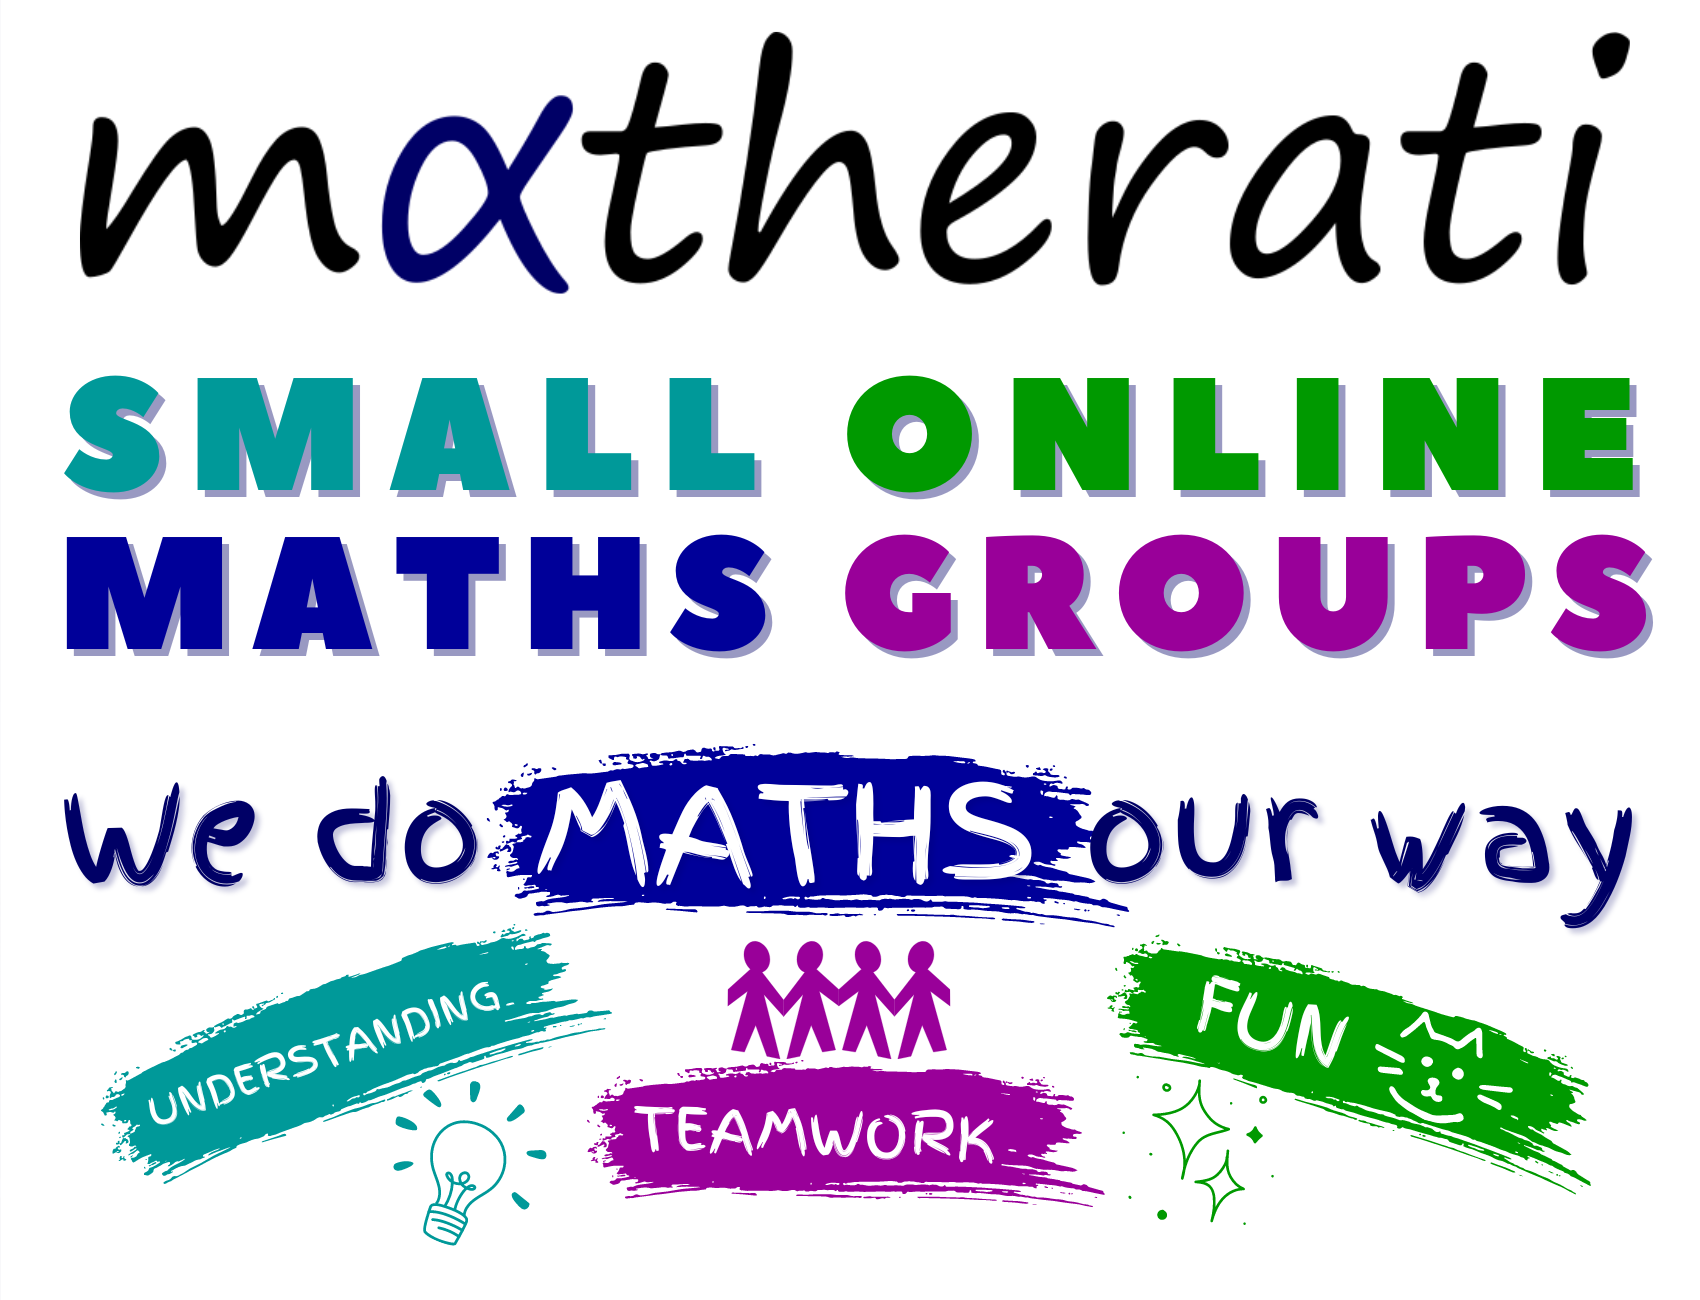 matherati small online maths groups